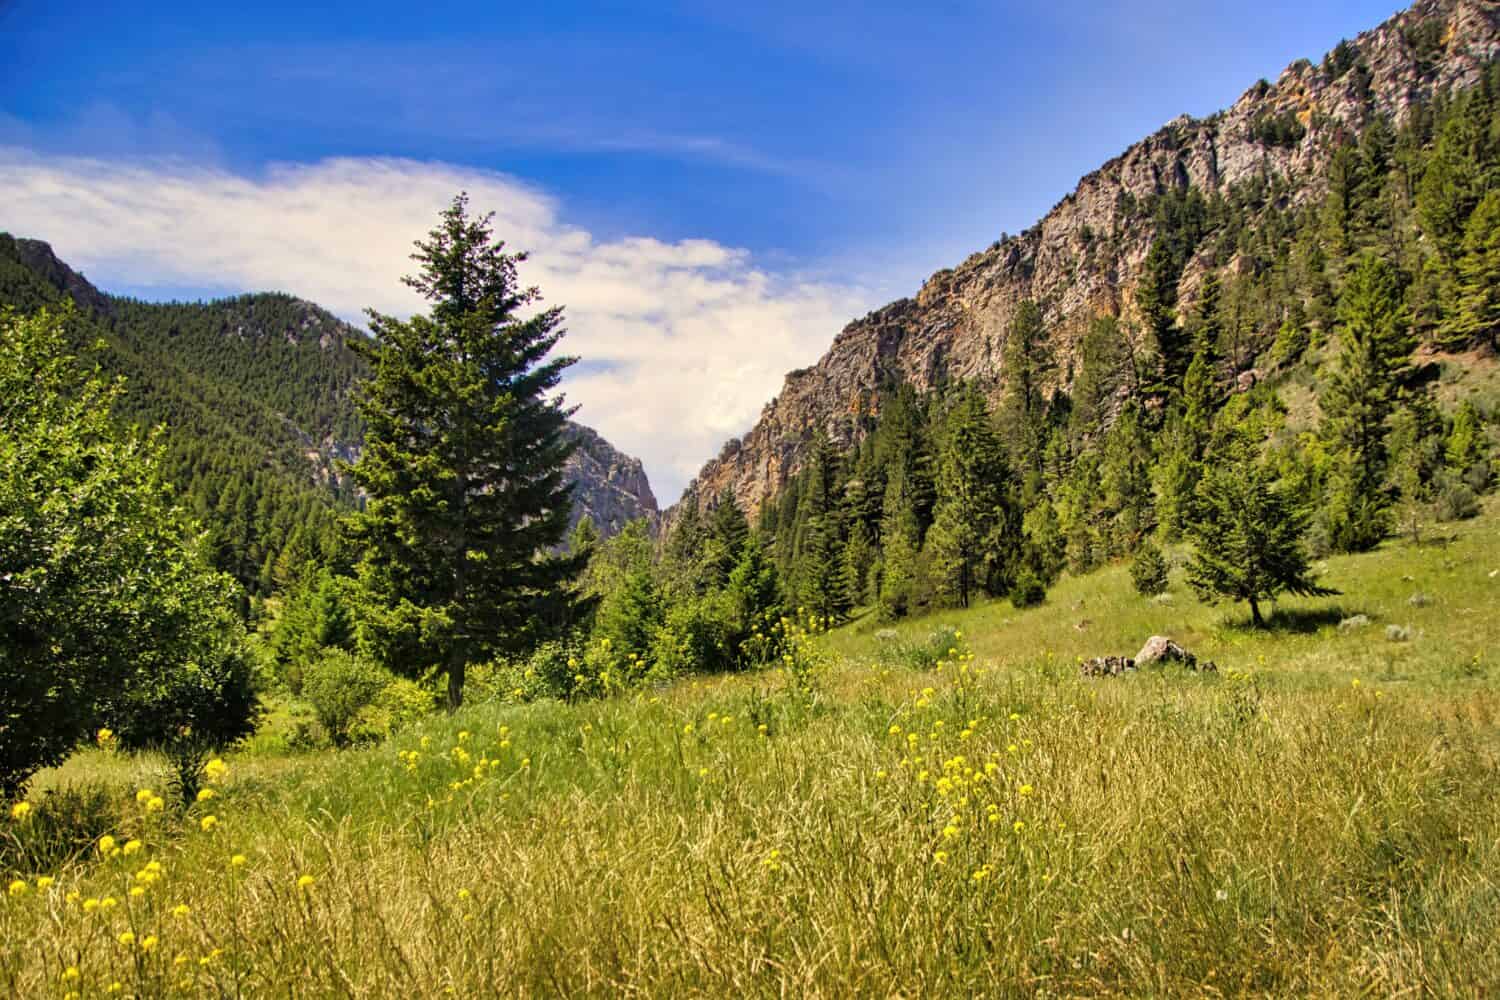 Sotto un cielo blu con nuvole bianche all'orizzonte, montagne rocciose sembrano separarsi oltre un campo di erbe verdi e fiori selvatici gialli in un giorno d'estate vicino a Townsend, Montana, USA.